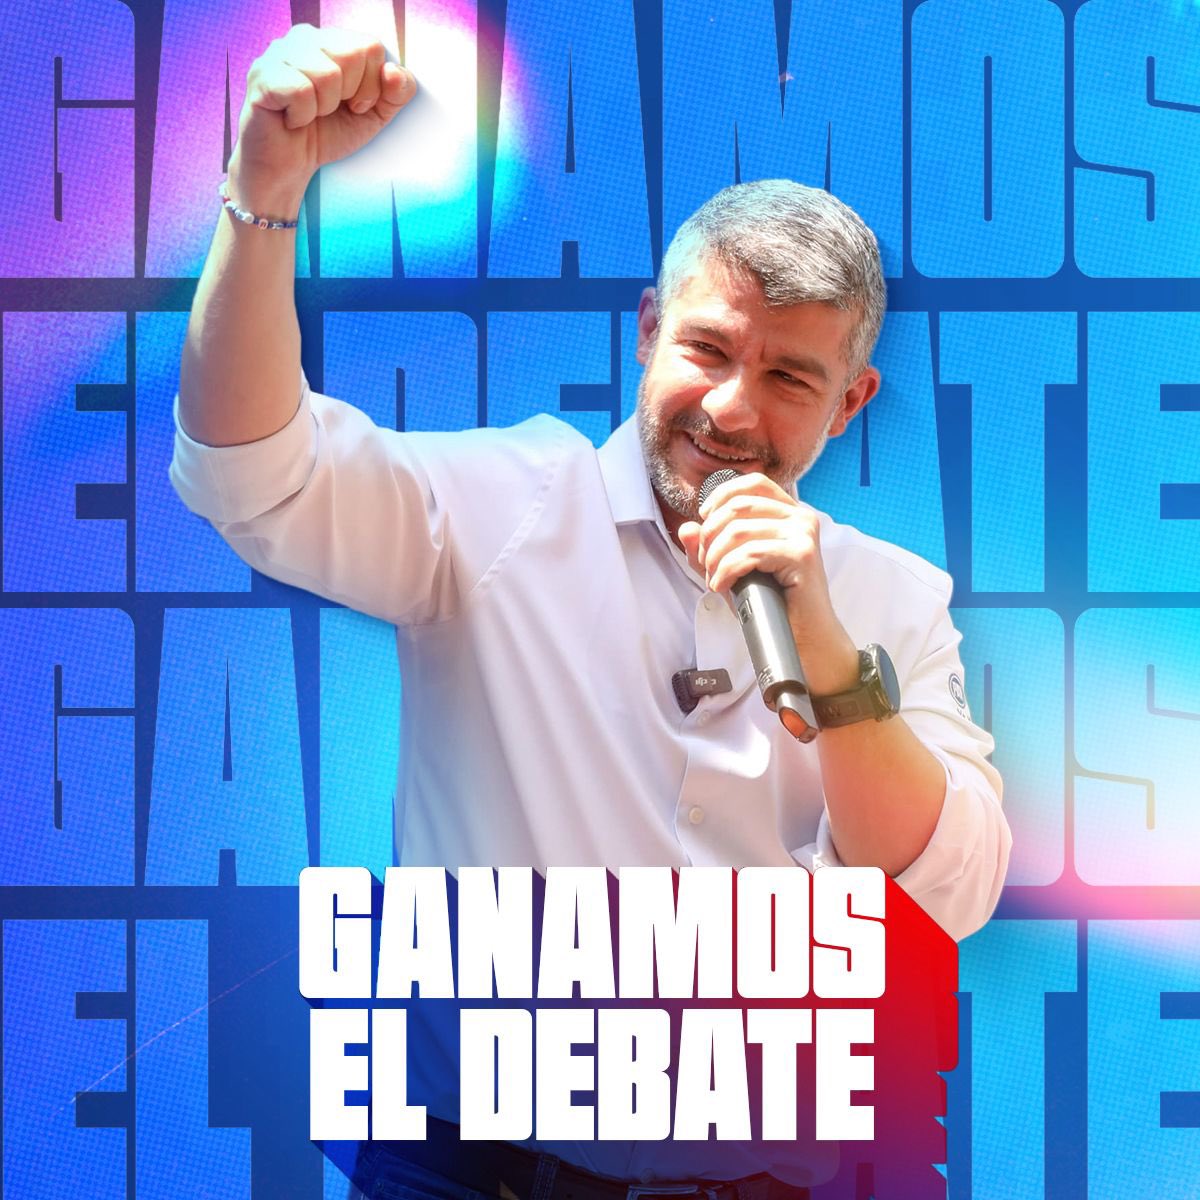 ¡Muchas felicidades @mauriciotabe por tu victoria en el debate! Demostraste que tu visión ha elevado a la Miguel Hidalgo a una alcaldía de calidad mundial. #DebateChilango #DiputacionMigrante #ElCambioViene #DiputadoMigrante #MexicanosEnElExterior #VotoExtranjero…